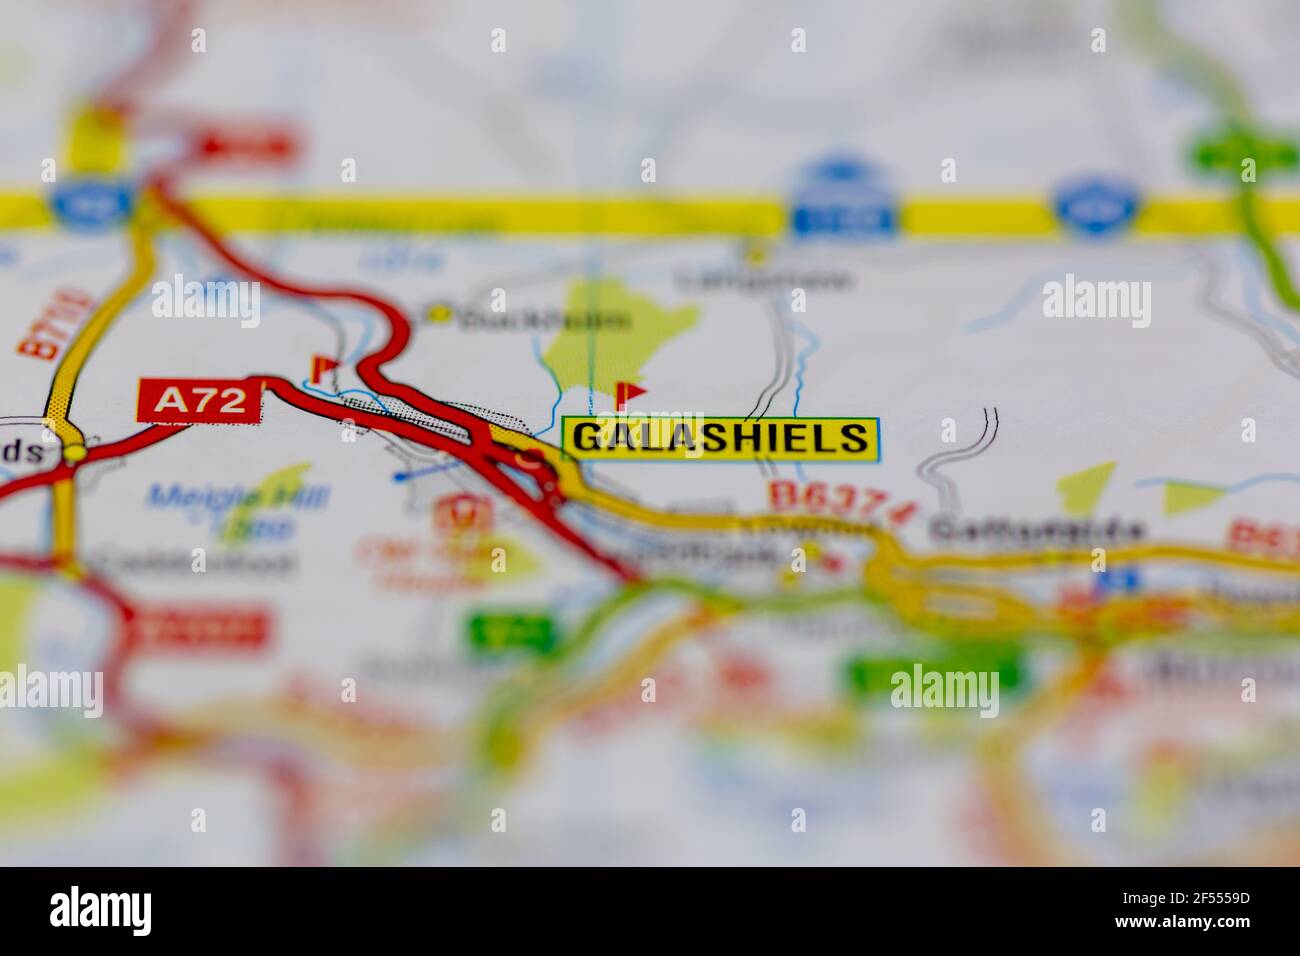 Galashiels affichés sur une carte de la géographie ou sur une carte routière Banque D'Images